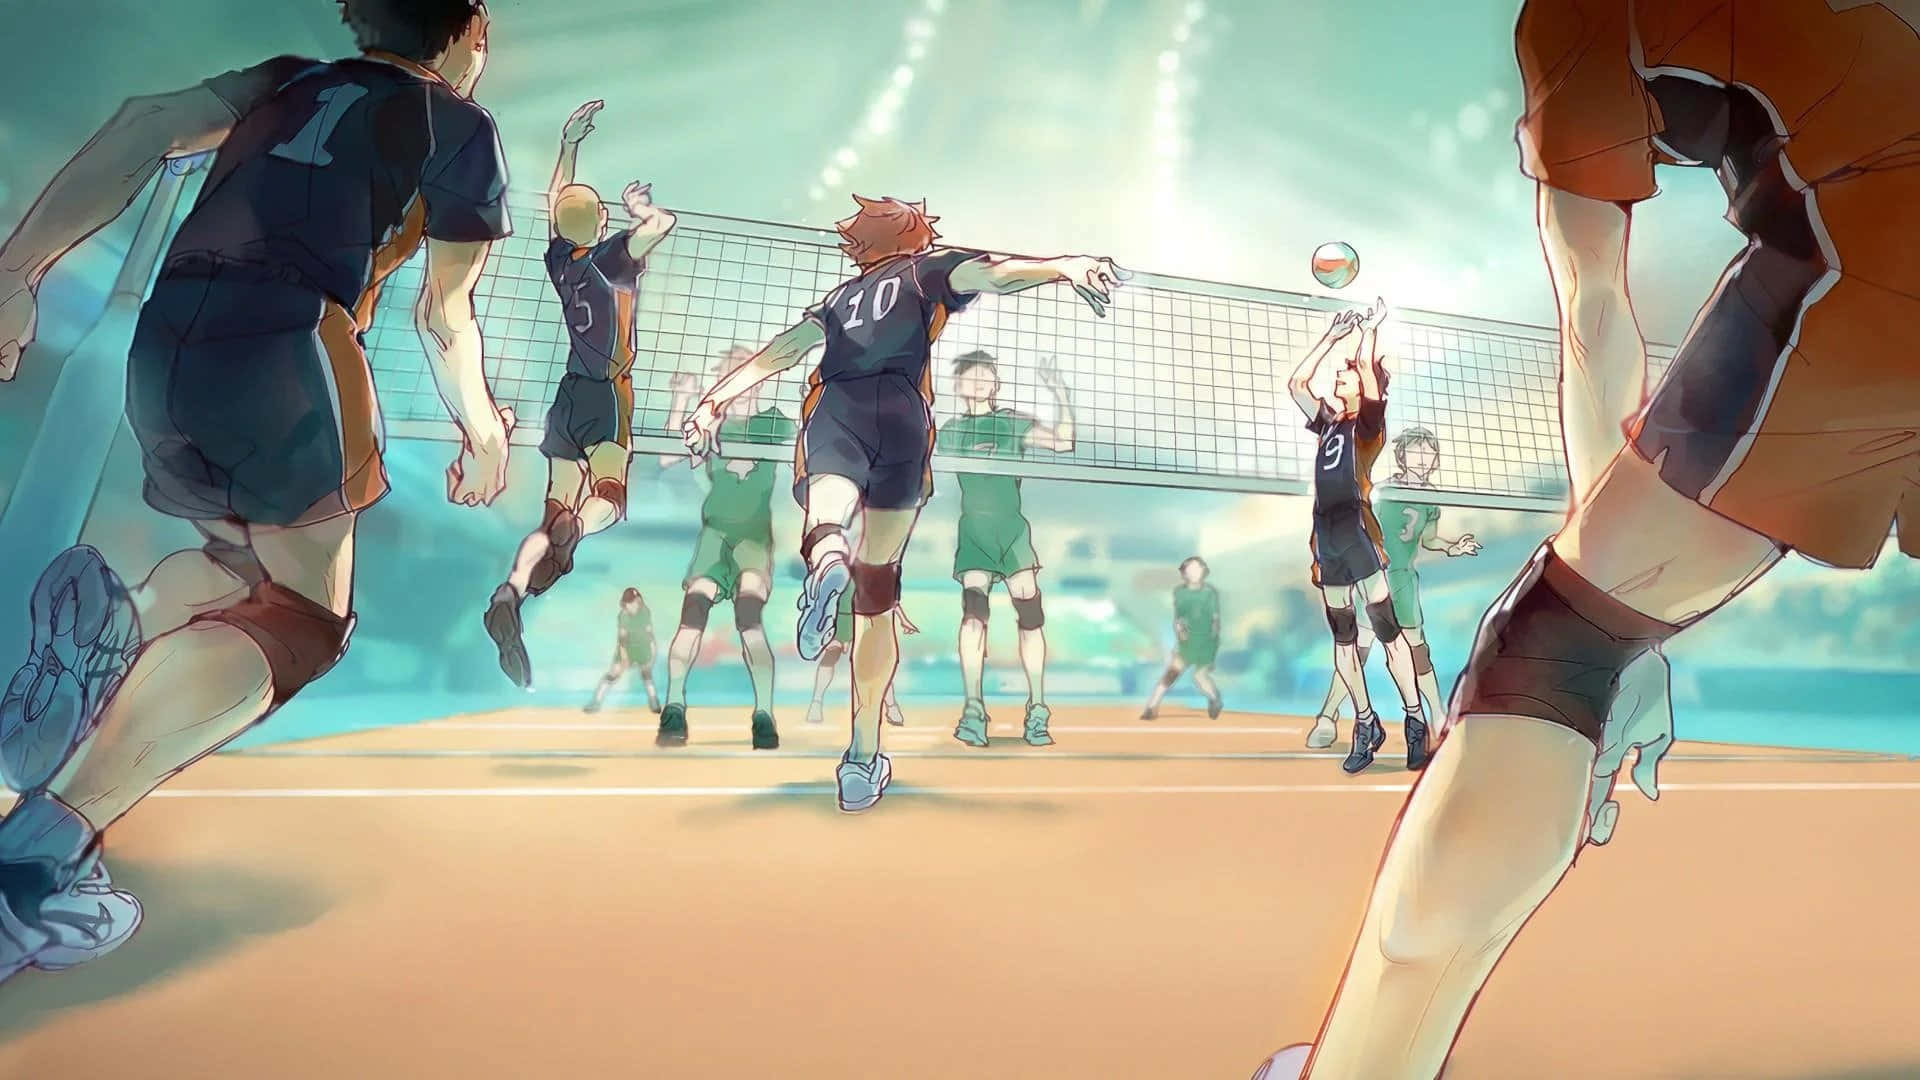 Haikyuushoyo Hinata Volleyball-spielbild